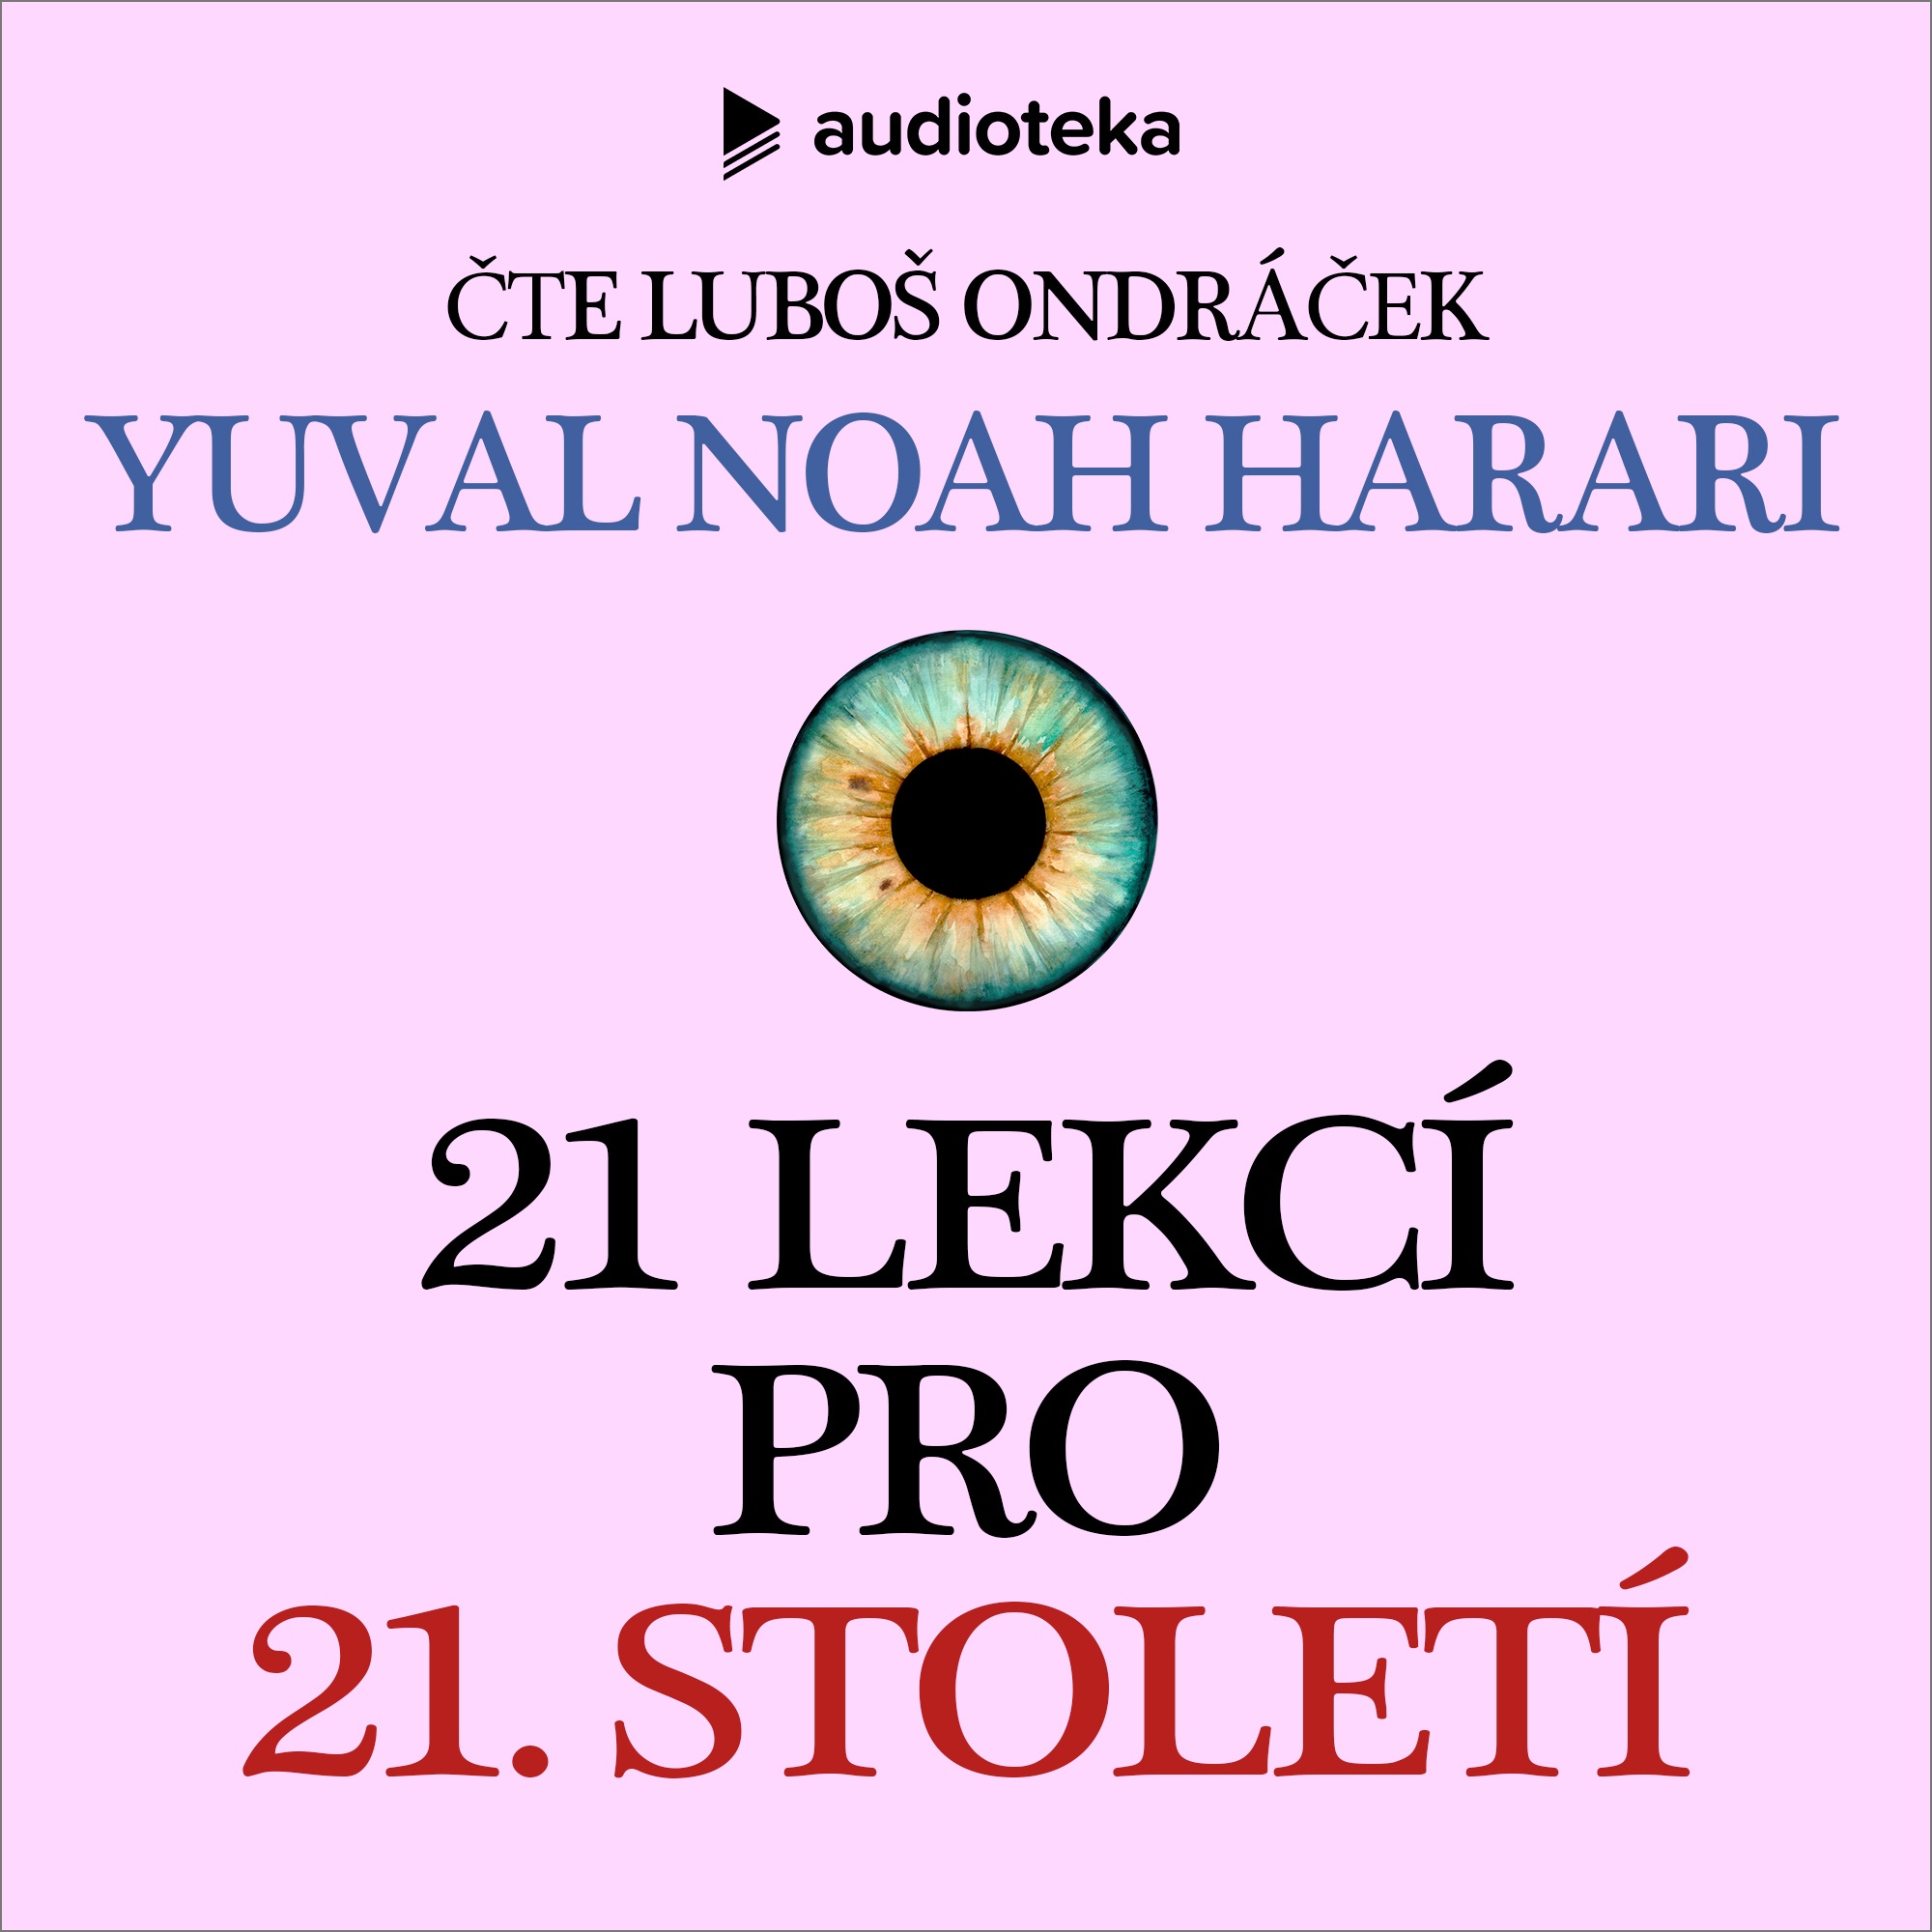 Yuval Noah Harari: 21 lekcí pro 21. století